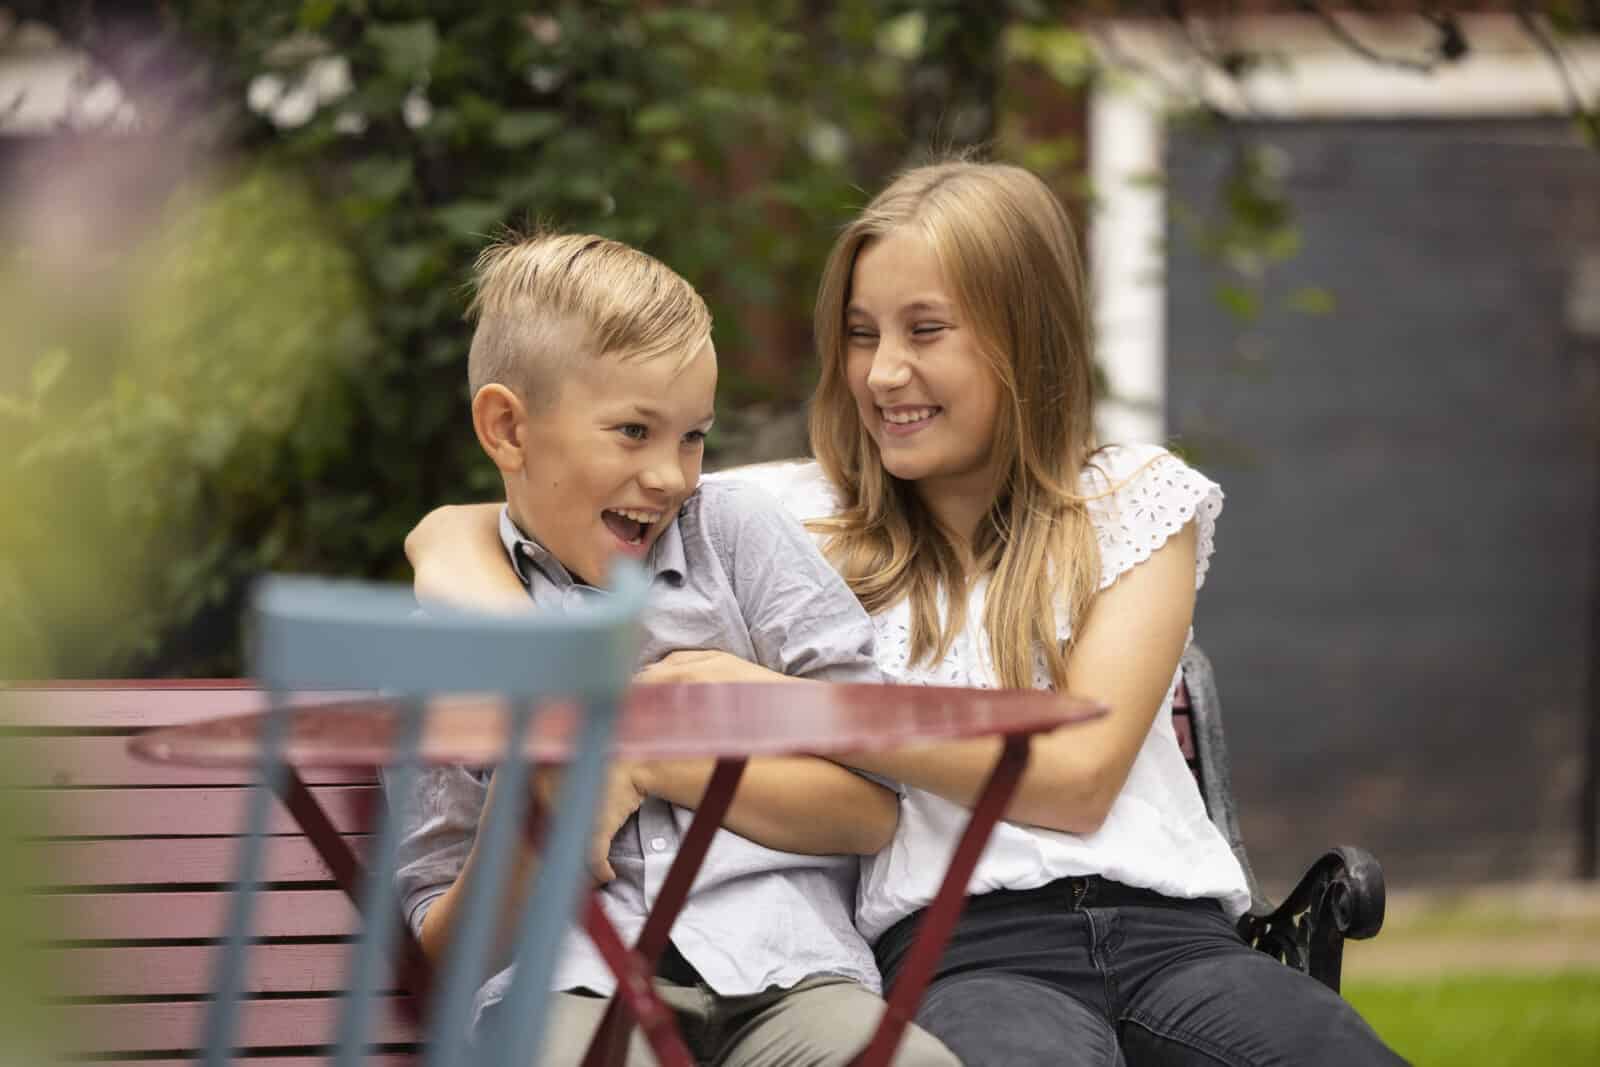 Tyttö ja poika istuvat puutarhassa. He nauravat yhdessä. Etualalla näkyy puutarhatuoli, takana piharakennuksen ovi.